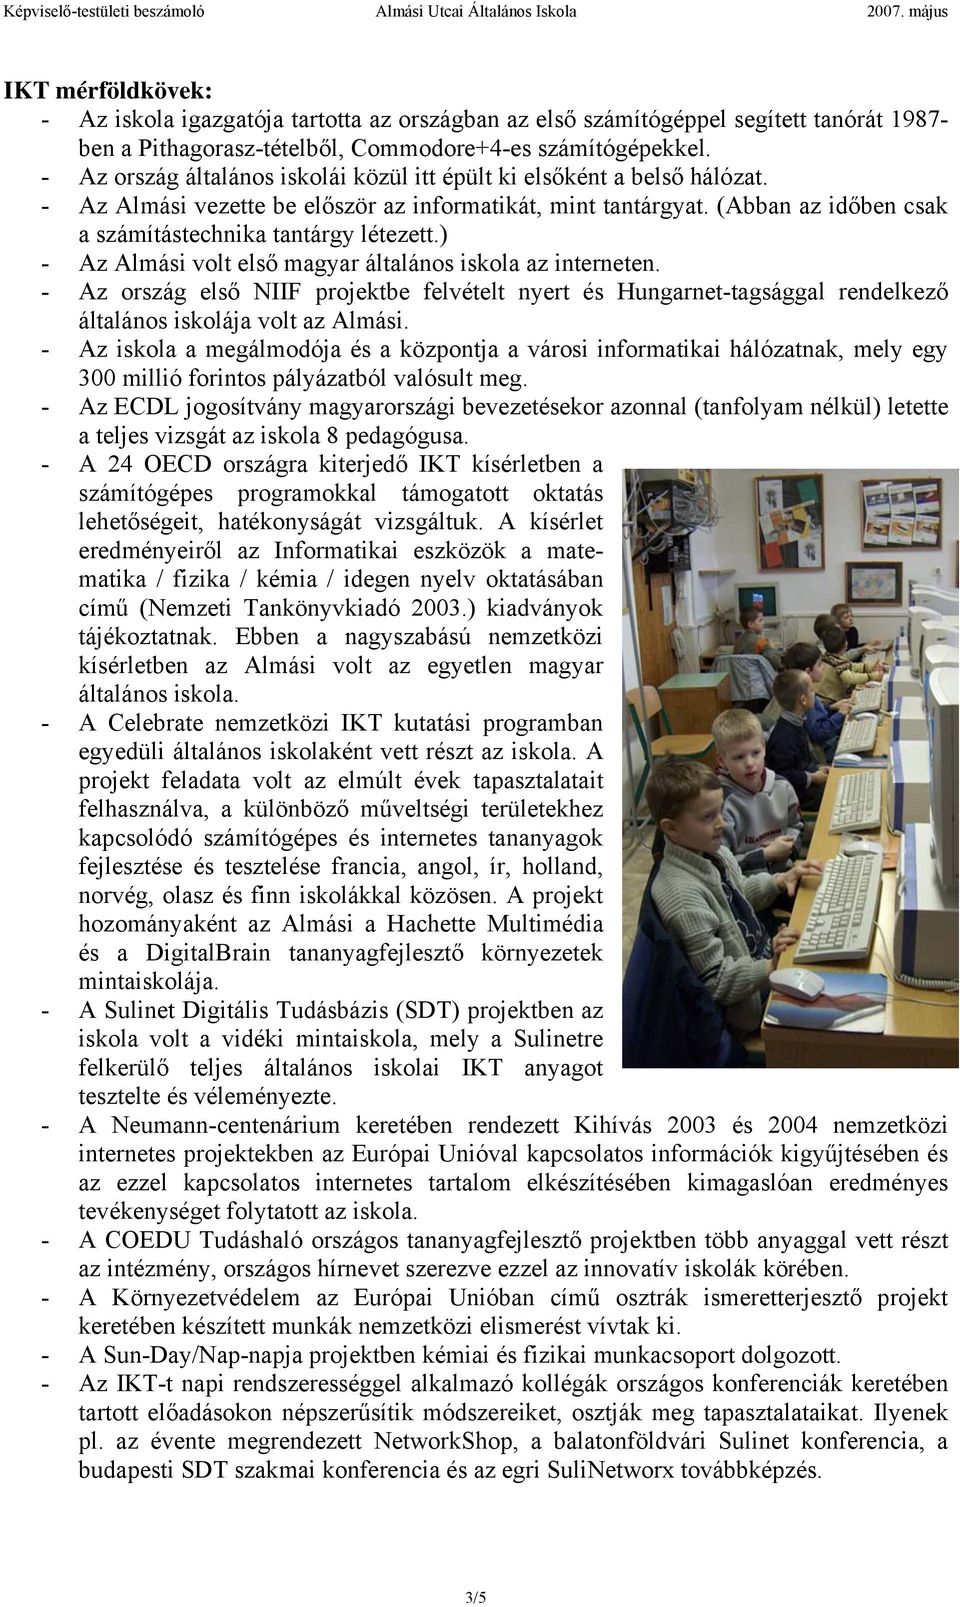 ) - Az Almási volt első magyar általános iskola az interneten. - Az ország első NIIF projektbe felvételt nyert és Hungarnet-tagsággal rendelkező általános iskolája volt az Almási.